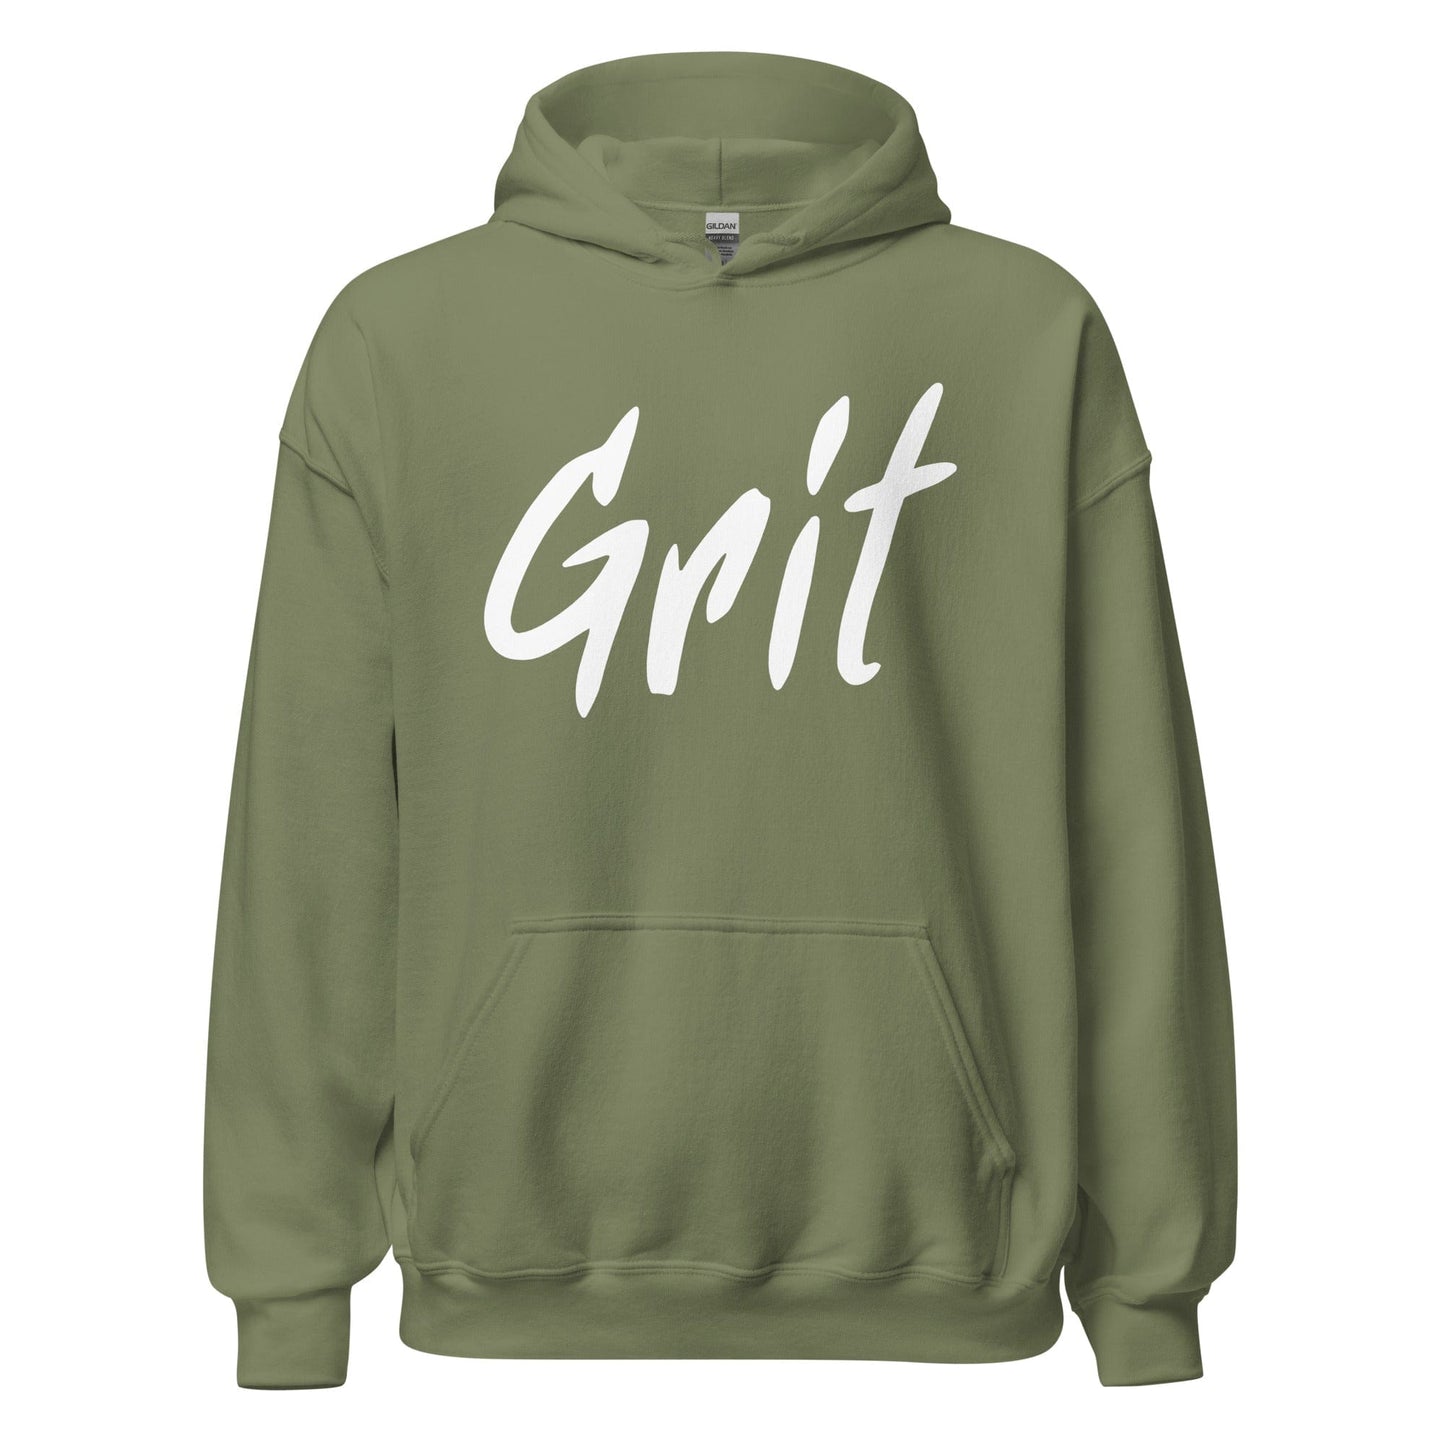 Grit - Adult Hoodie